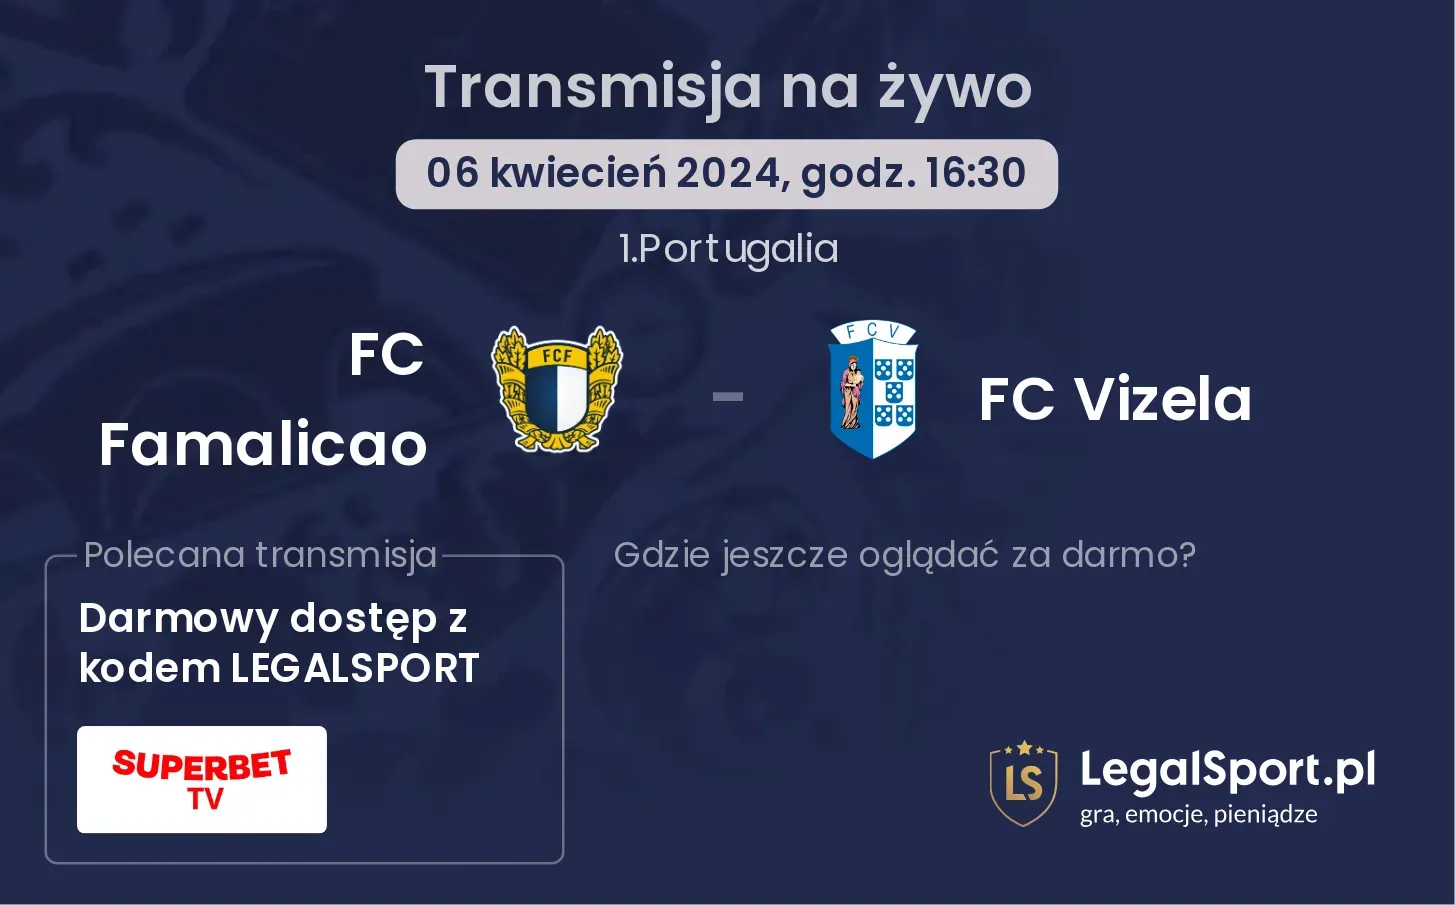 FC Famalicao - FC Vizela transmisja na żywo